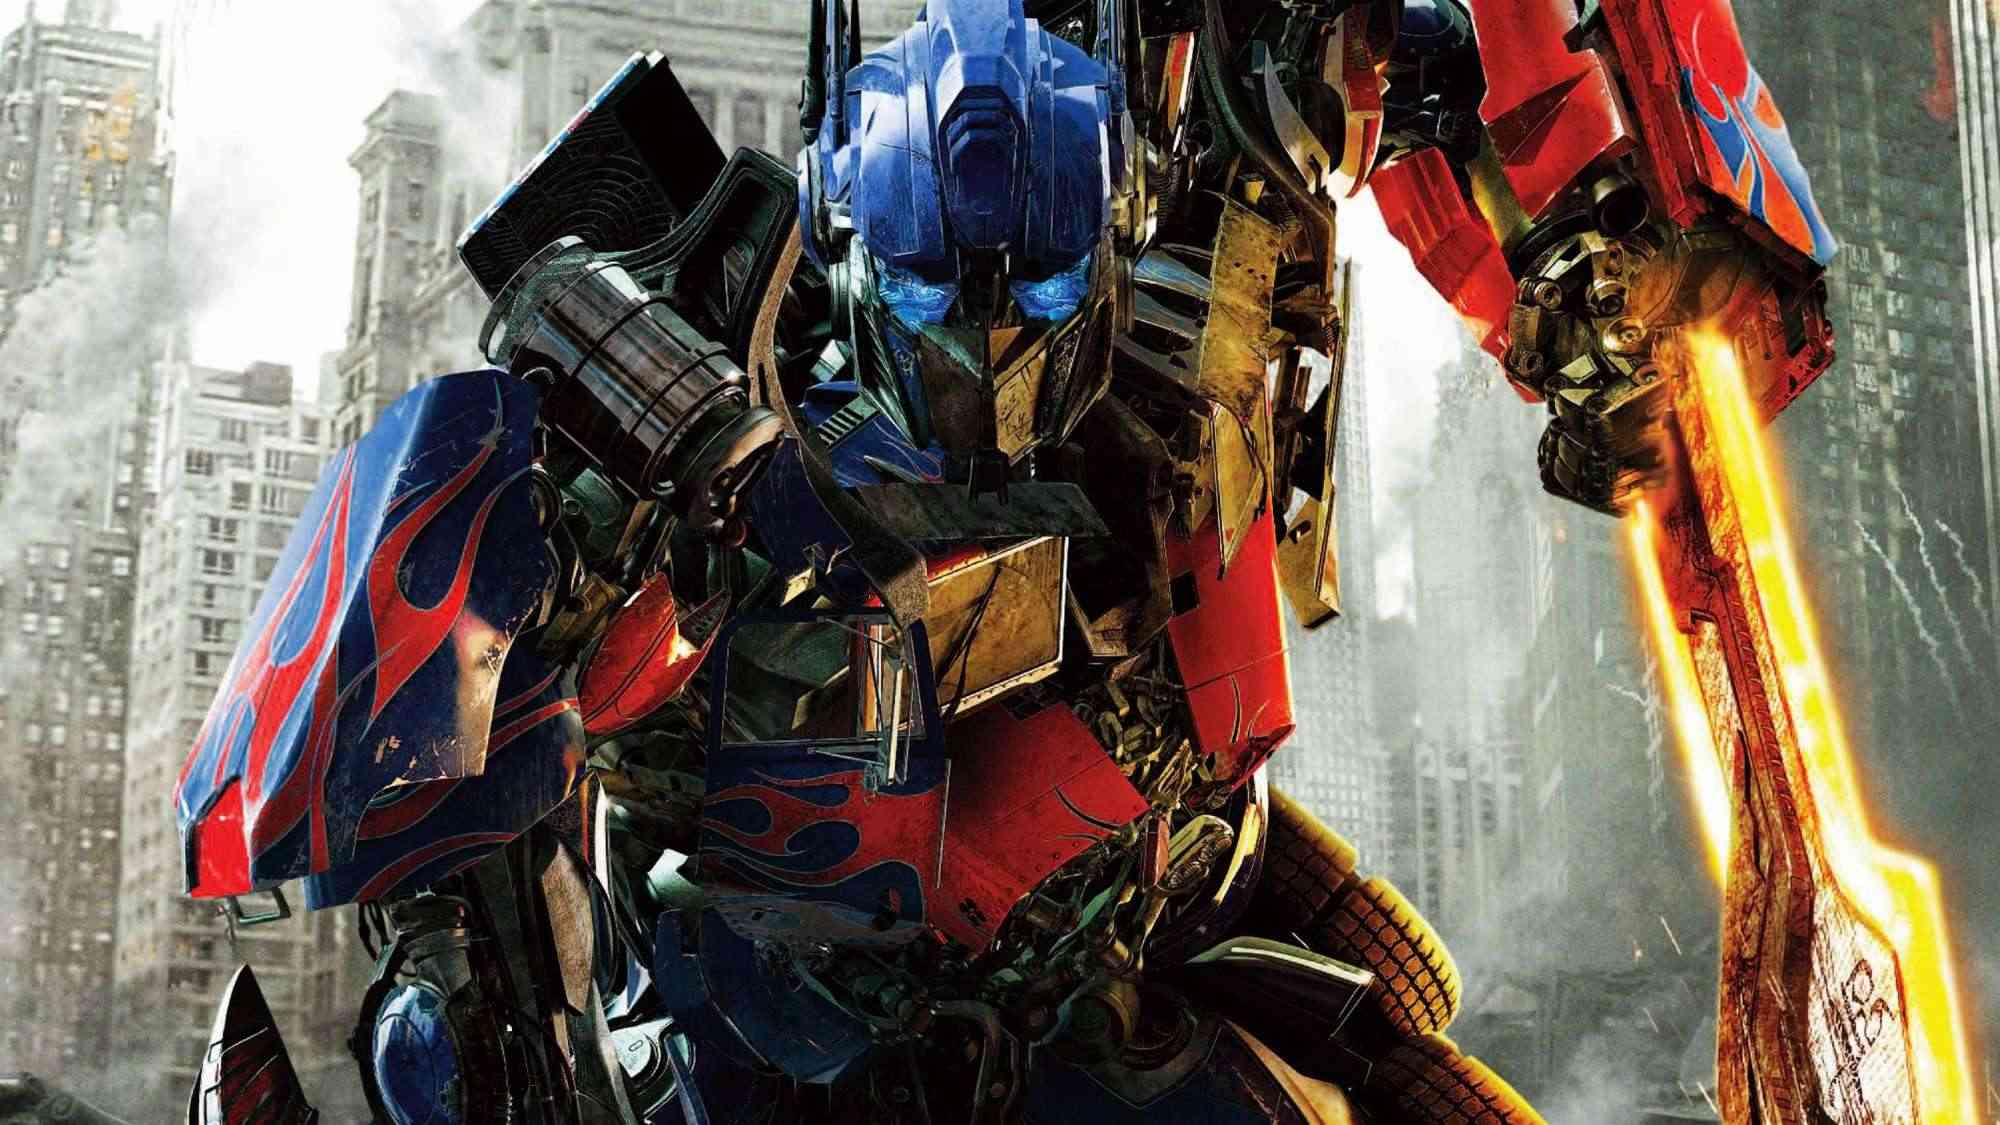 Ngay cả đạo diễn Michael Bay cũng từng xem 'đứa con tinh thần' Transformers là một thảm họa